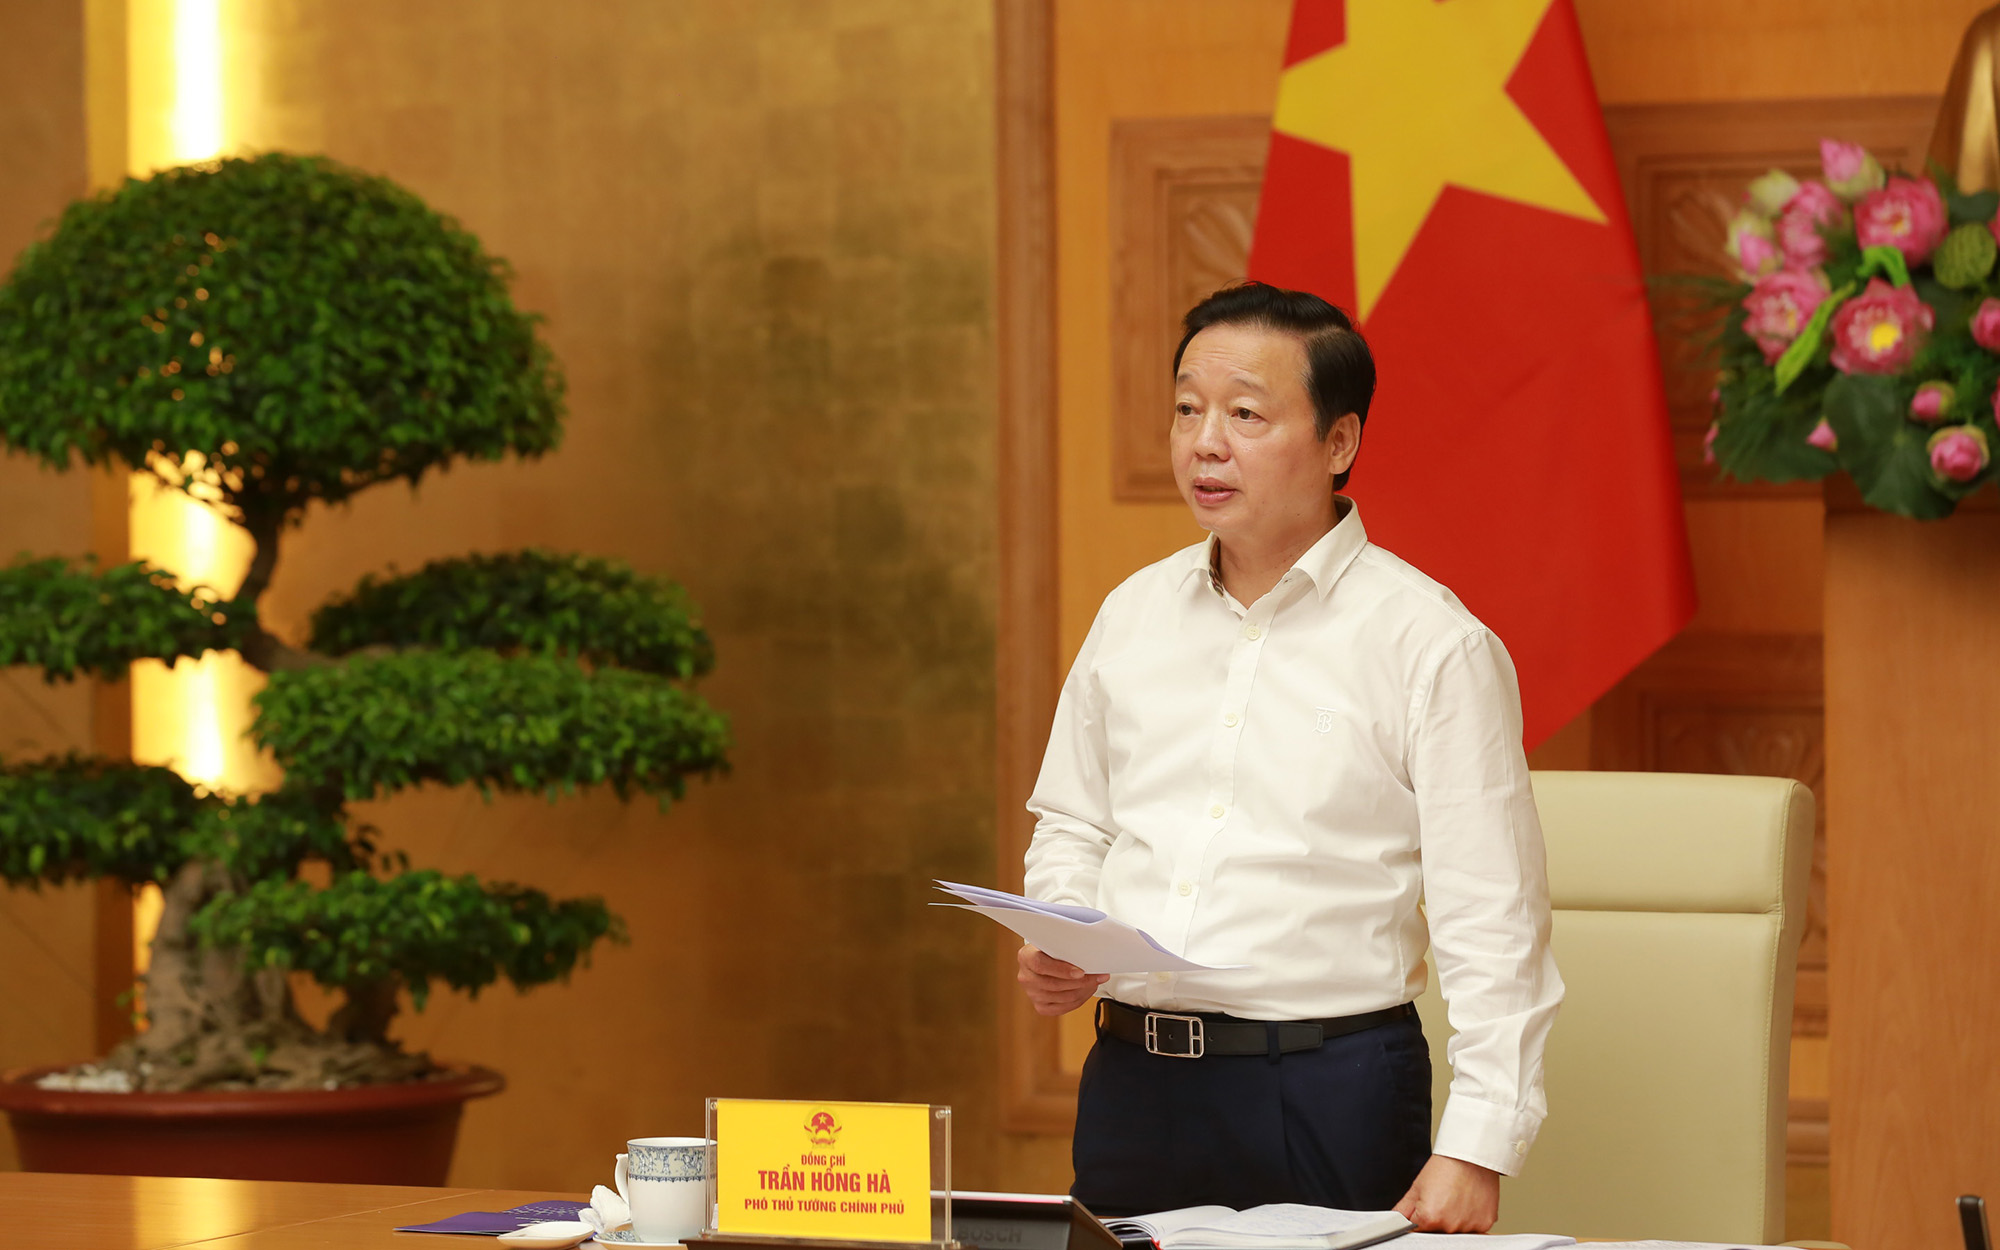 Phó Thủ tướng Trần Hồng Hà: Bộ Công Thương phải tập trung chỉ đạo đồng bộ nhiều giải pháp đẩy nhanh tiến độ đầu tư, sớm đưa đường dây 500 kV mạch 3 từ Quảng Trạch đến Phố Nối vào vận hành theo yêu cầu của Thủ tướng Chính phủ - Ảnh: VGP/Minh Khôi